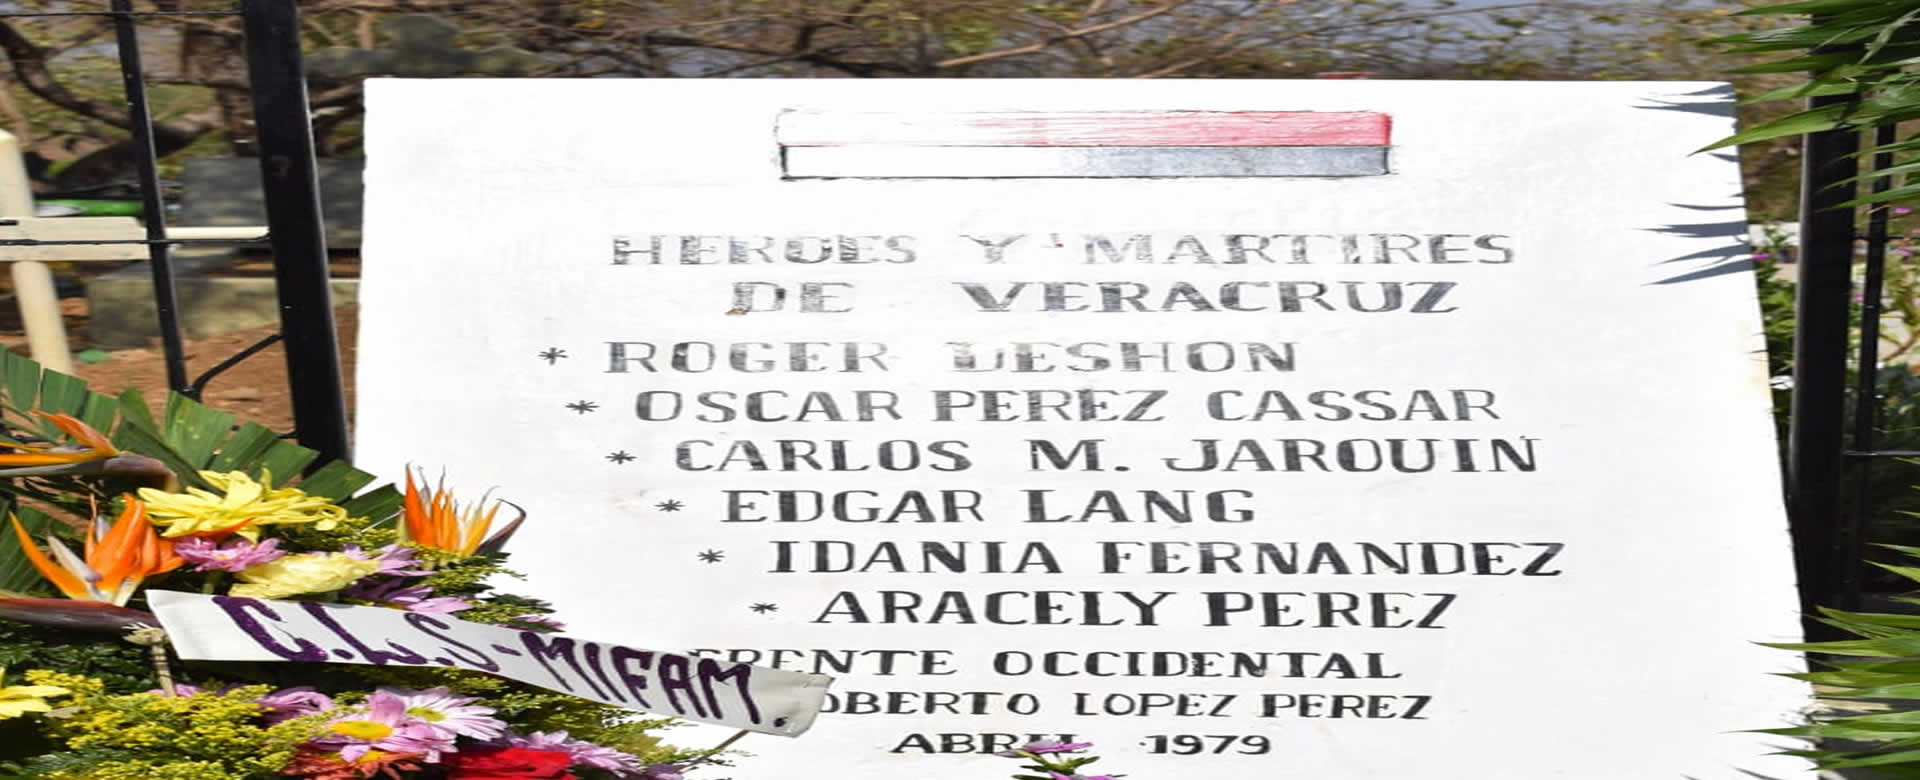 Héroes y Mártires de Veracruz